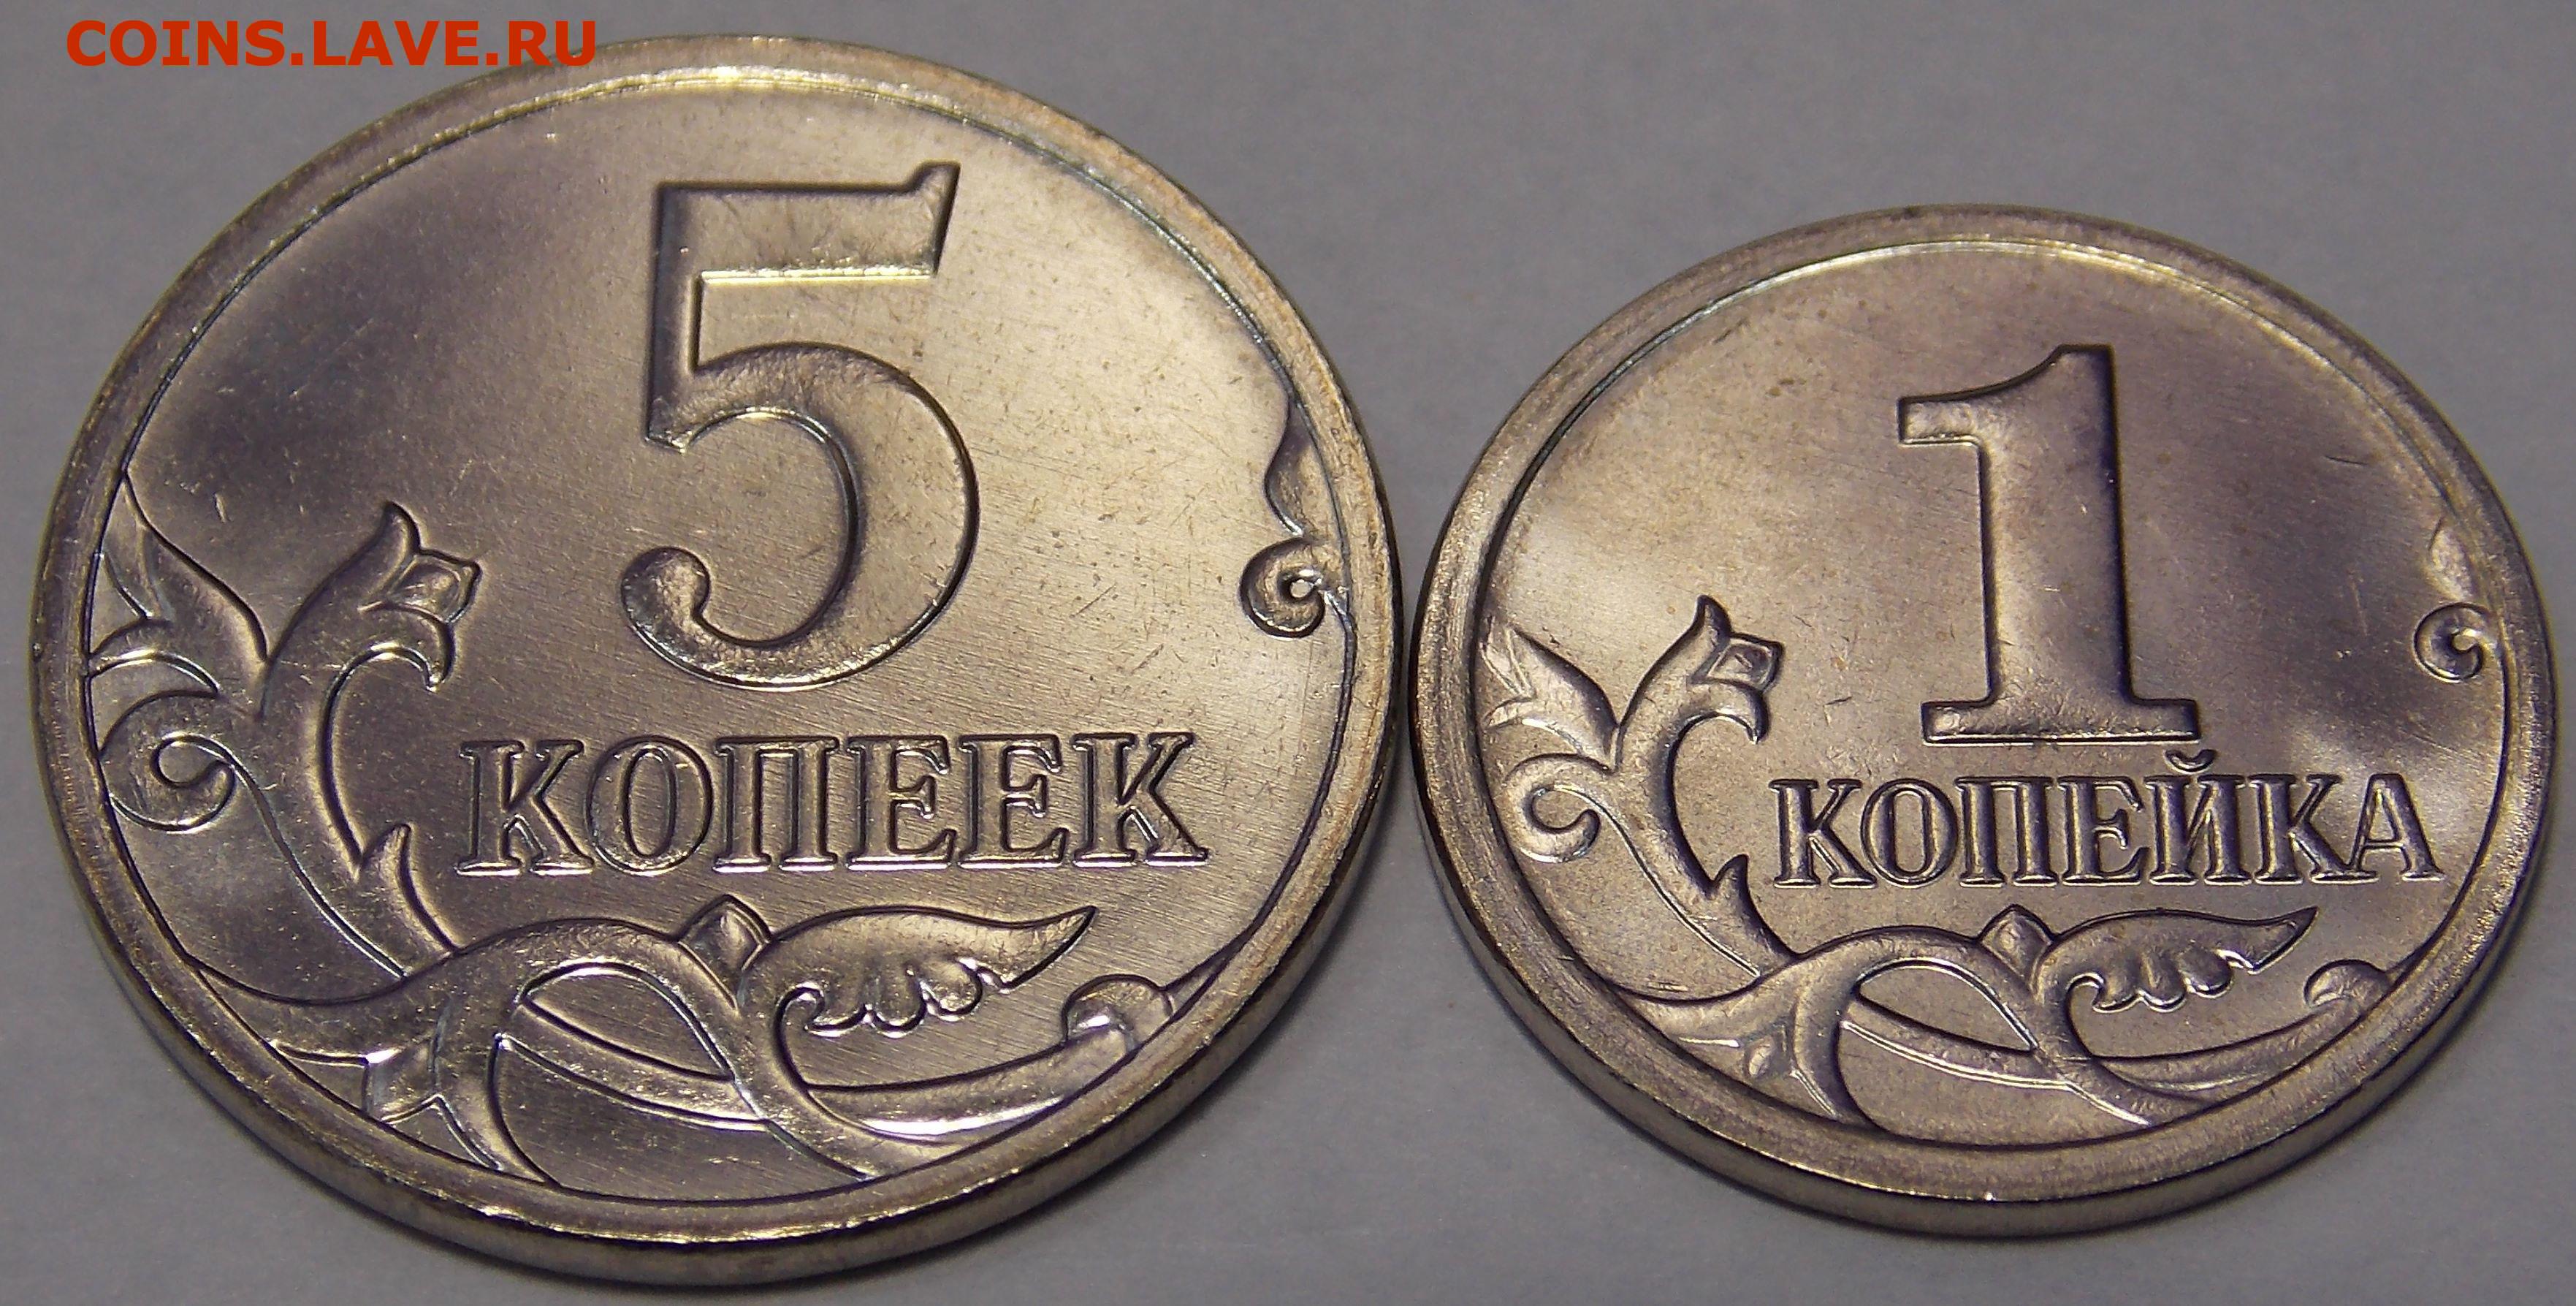 5 копеек авито. 1 И 5 копеек 2014. 5 Копеек Московского монетного двора. 1 Копейка 2014. 1 Копейка 1997 года.